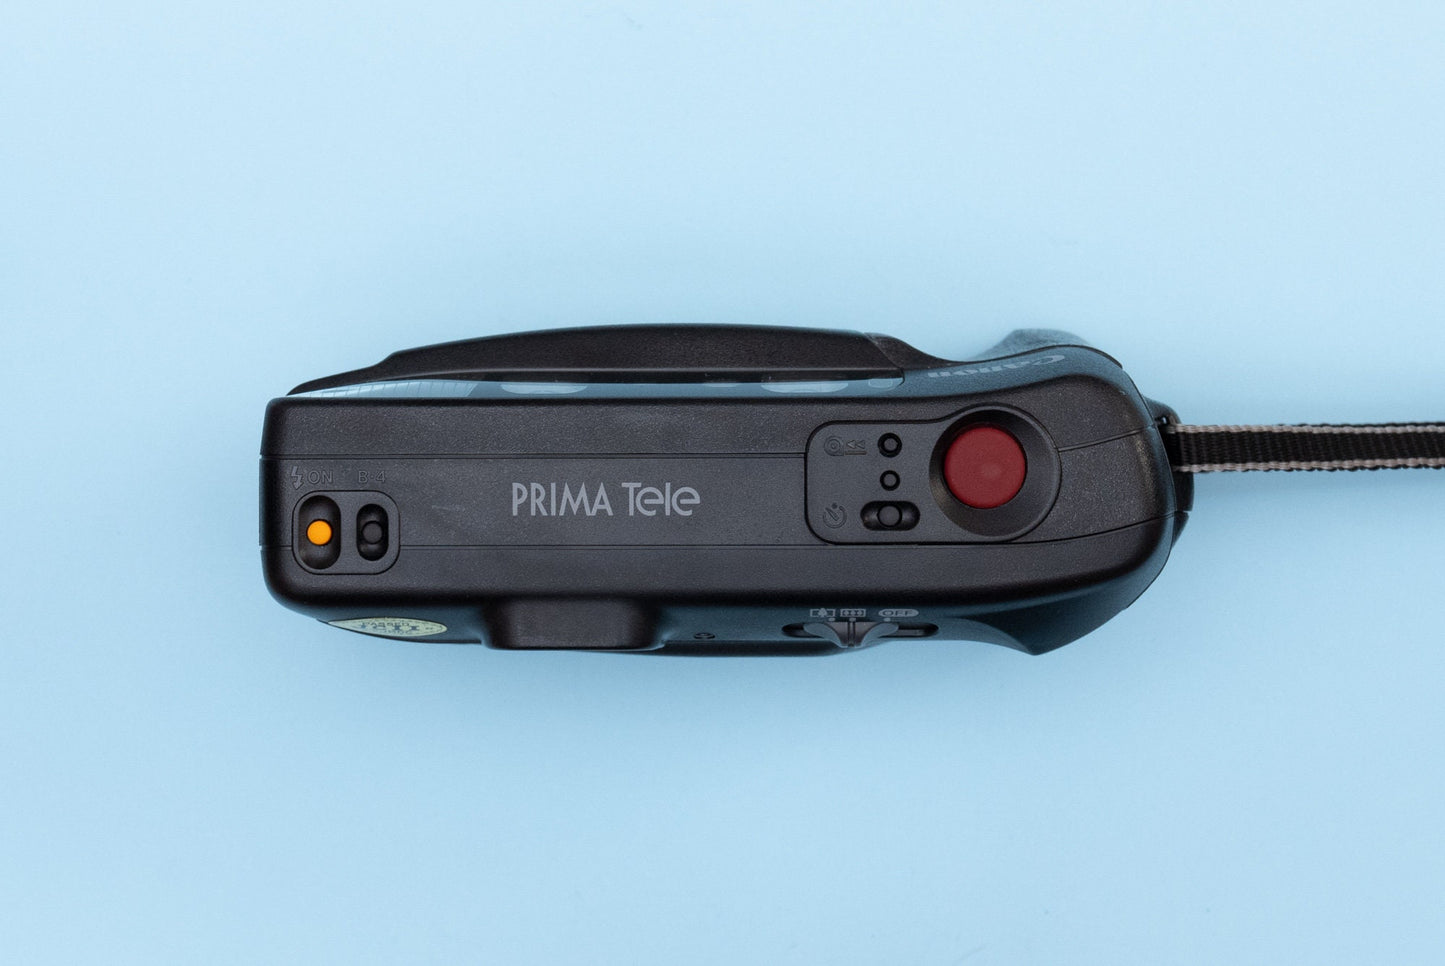 Canon Prima Tele Compact 35mm Film Camera